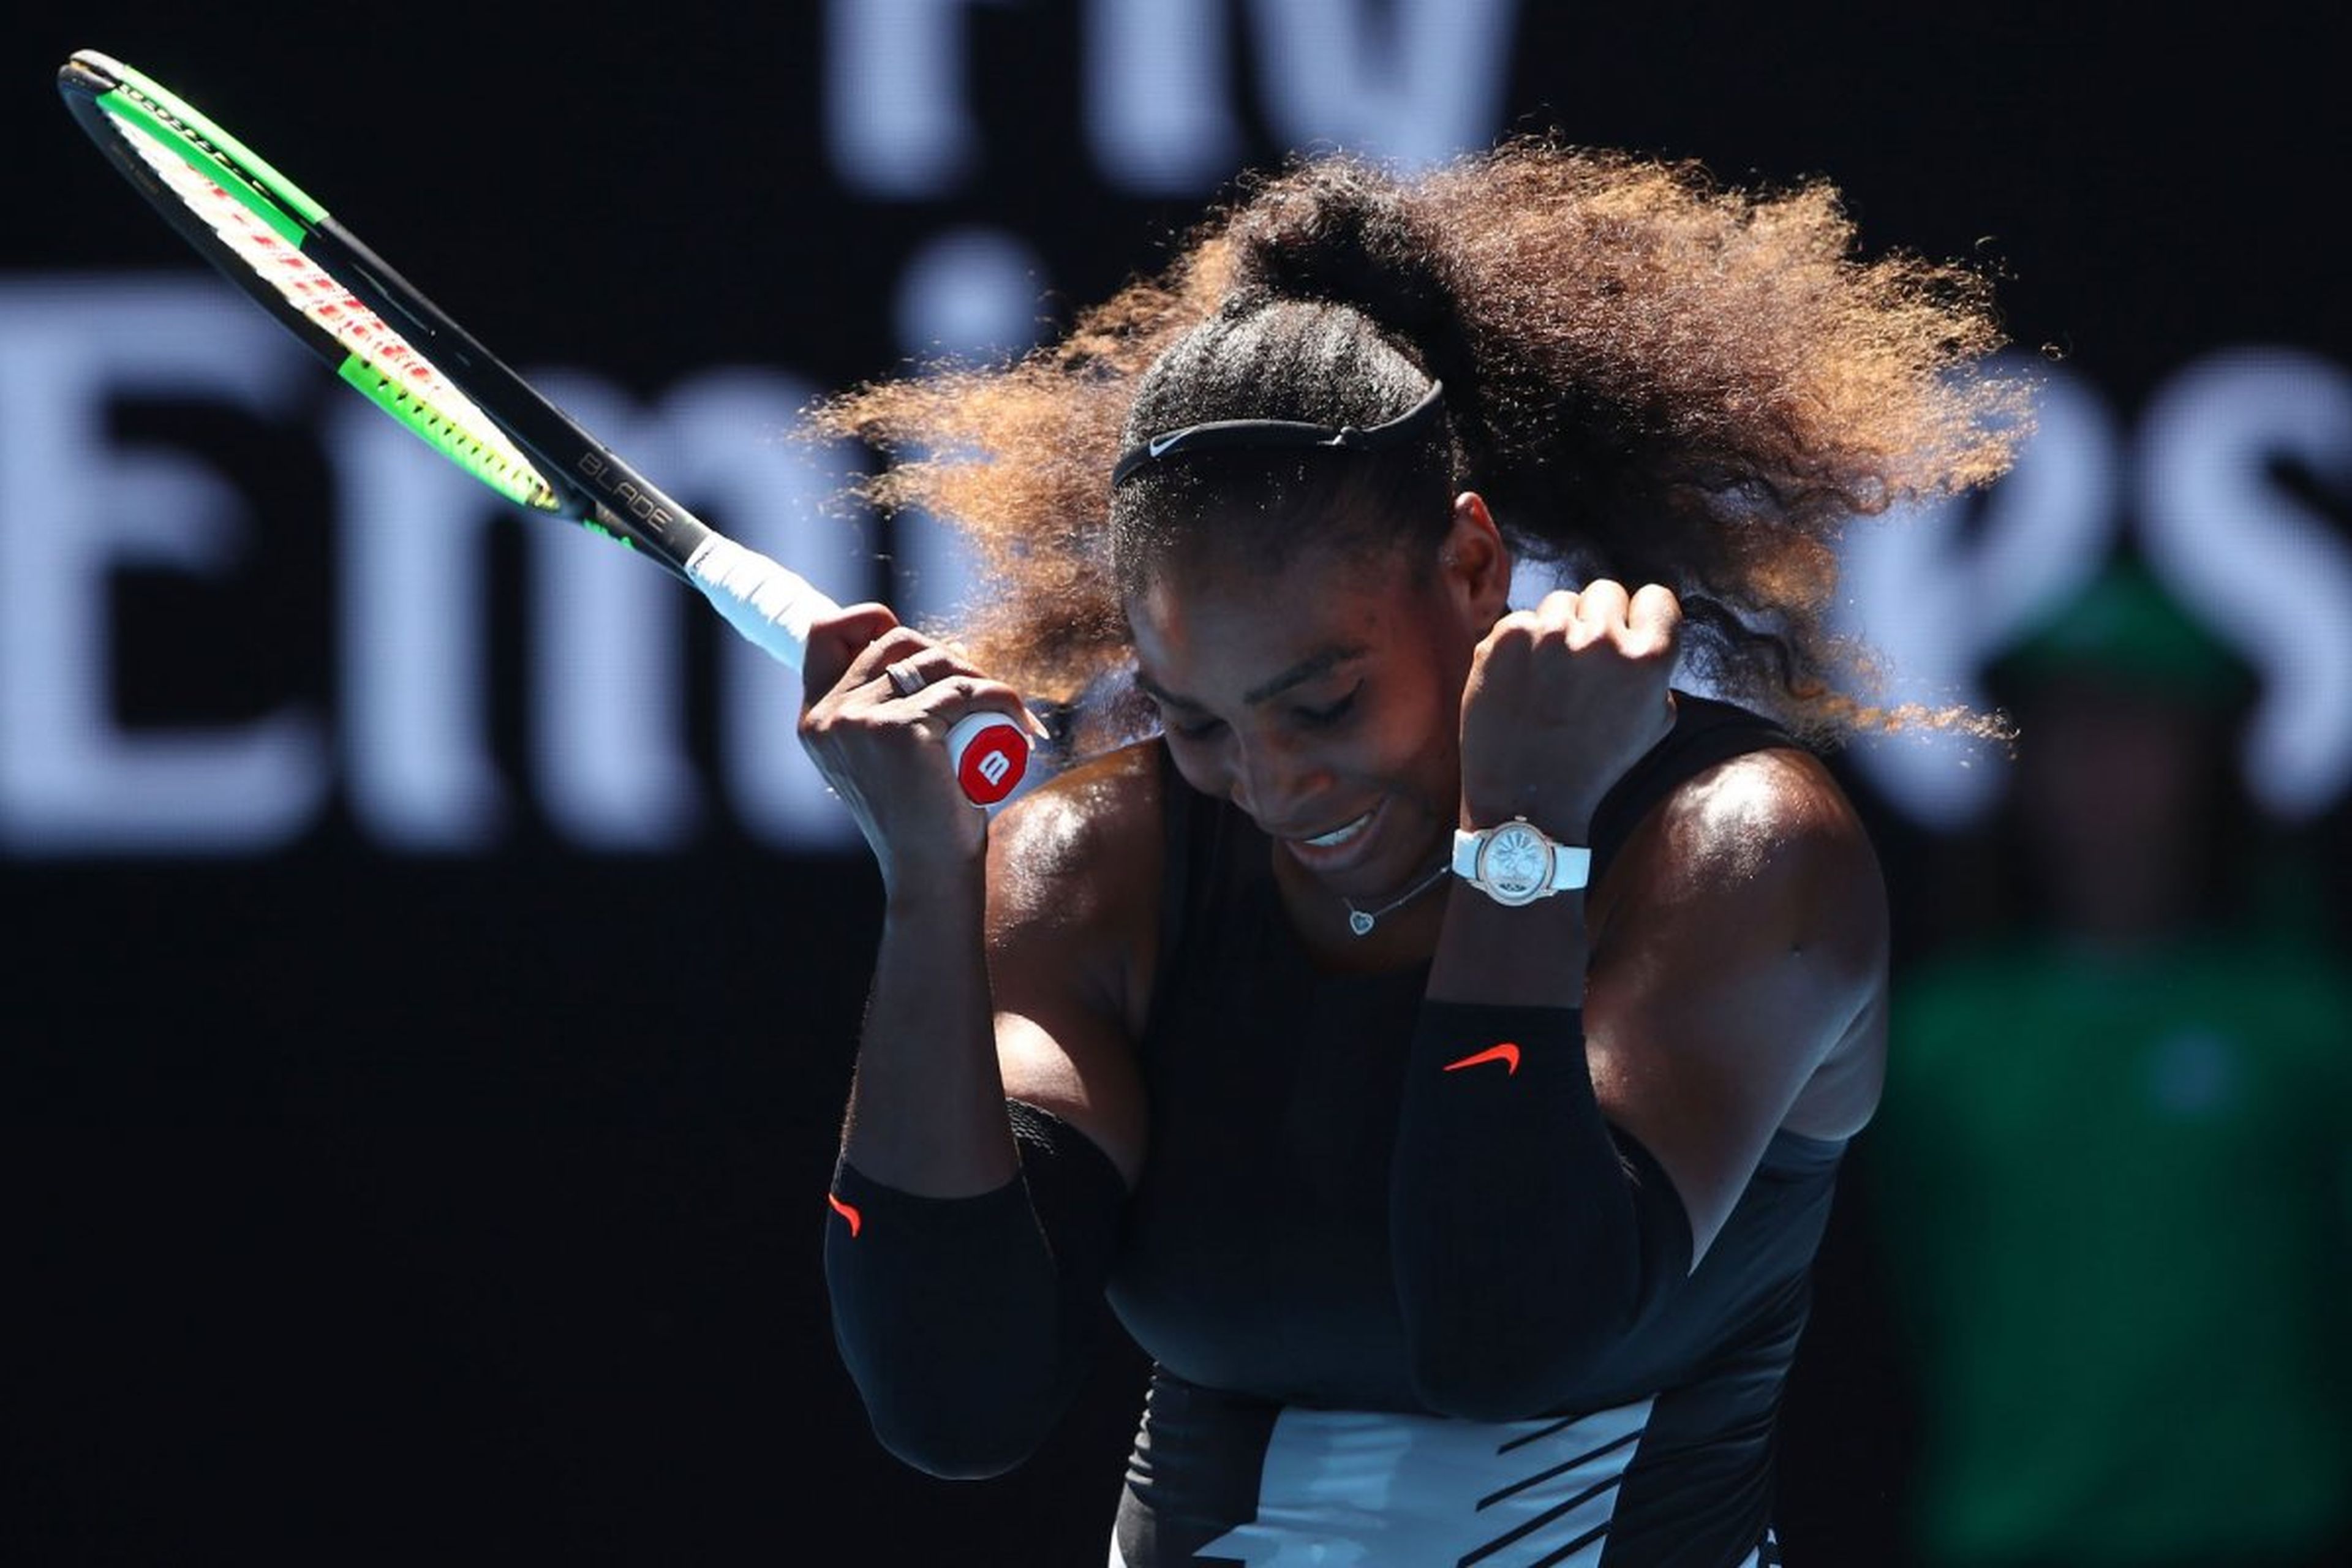 La tenista Serena Williams celebra un punto en el Open de Australia luciendo su reloj Audemars Piguet Millenary.